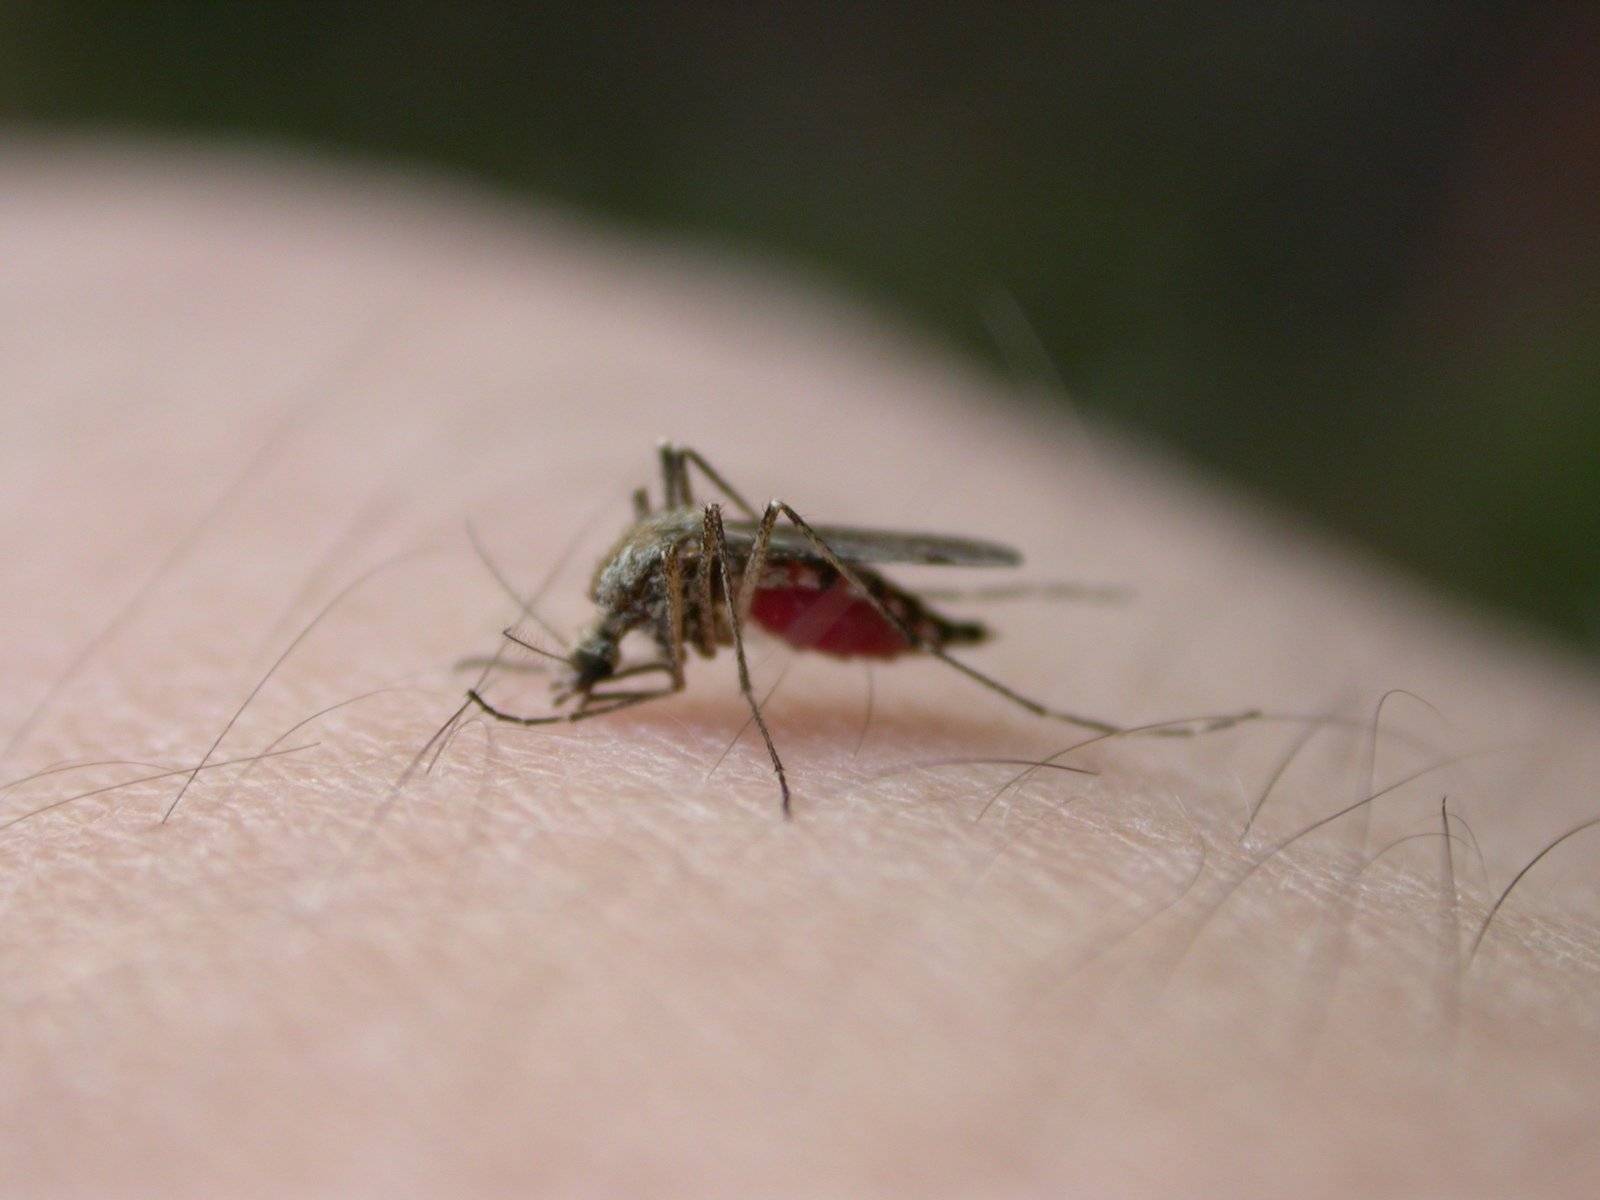 Продолжительность и цикл жизни комара. сколько дней живут комары после укуса?